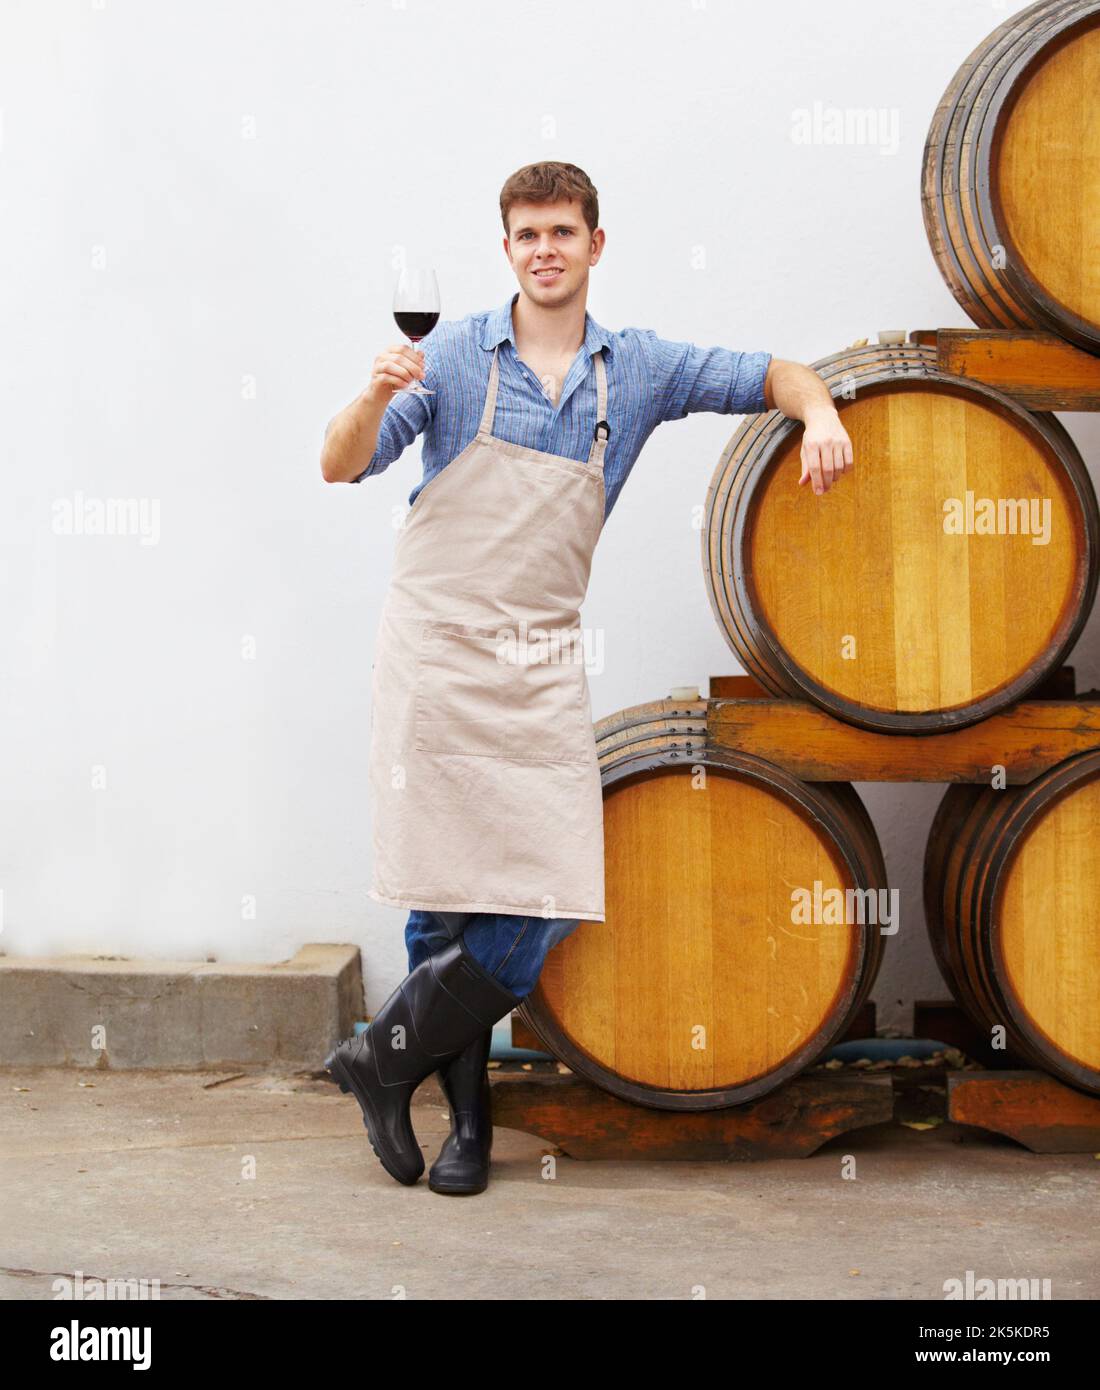 Genießen Sie einen feinen Rotwein. Ein junger Weinbauer hält ein Glas Rotwein in der Hand, während er sich auf ein Fass lehnt. Stockfoto